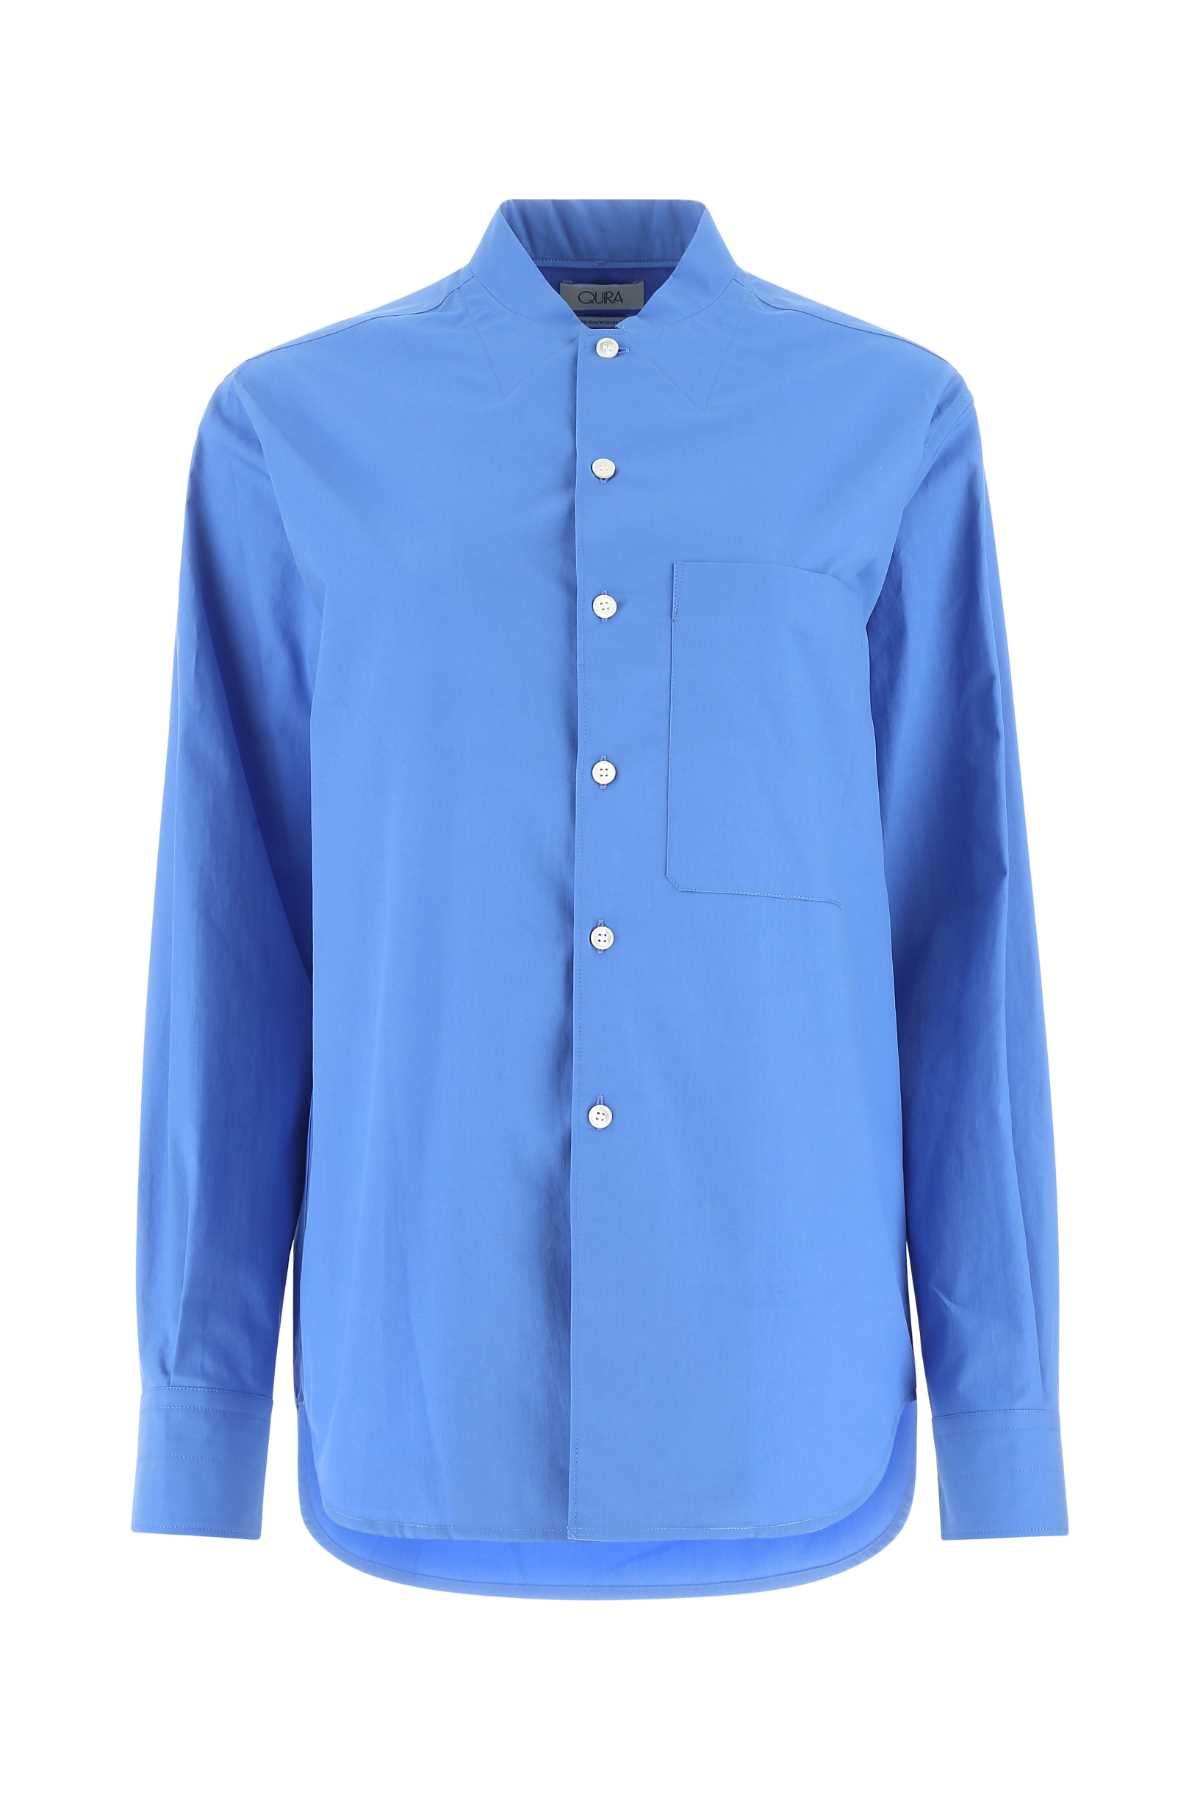 Cerulean Blue Poplin Shirt